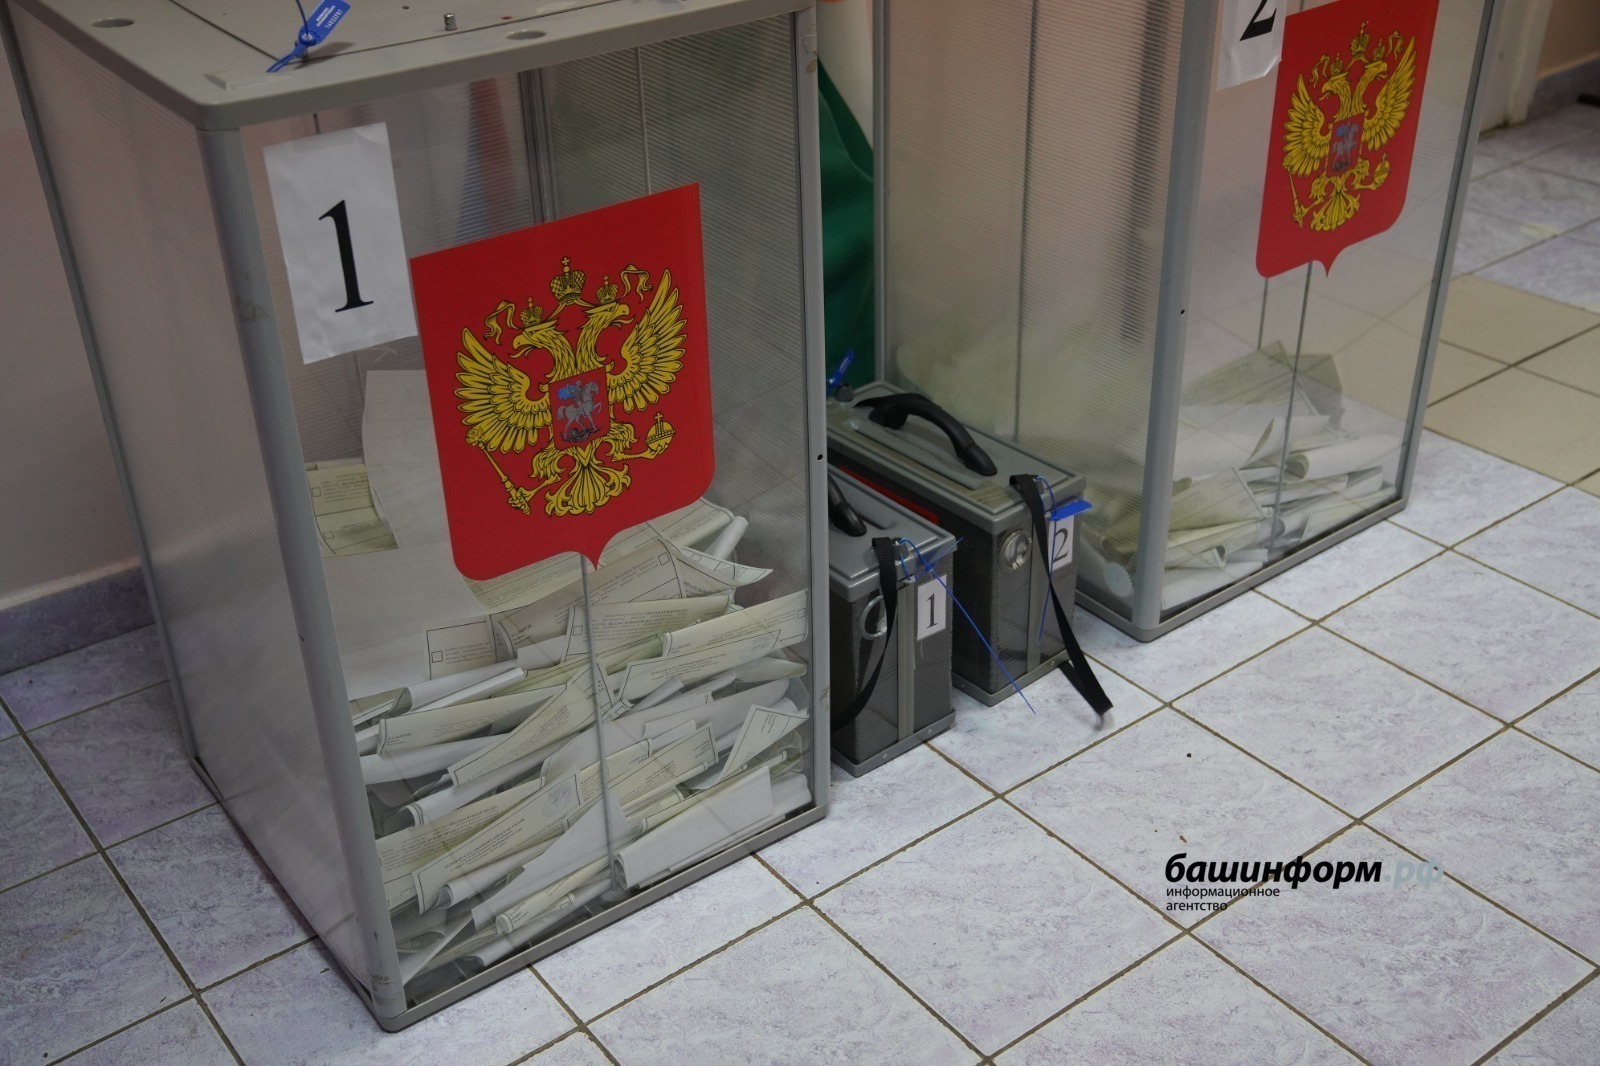 Жители Башкирии почти единогласно проголосовали за действующего Президента РФ